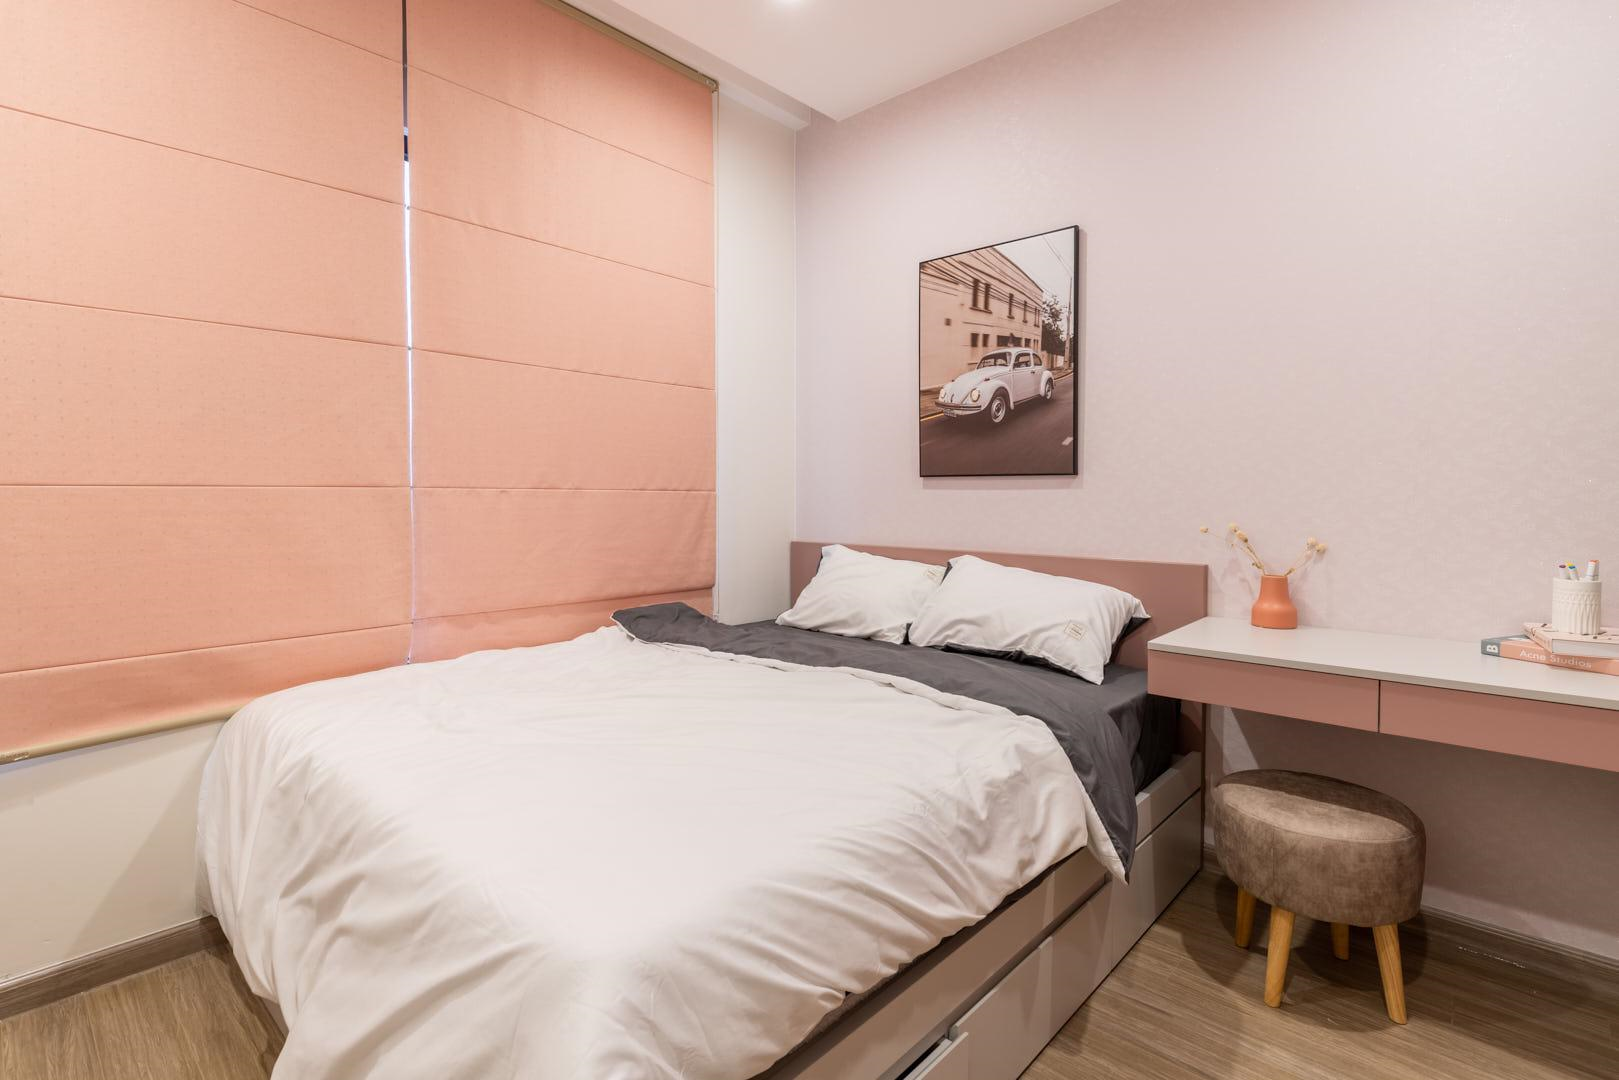 Phòng ngủ số 2 được thiết kế đẹp mắt với gam màu xu hướng hiện đại